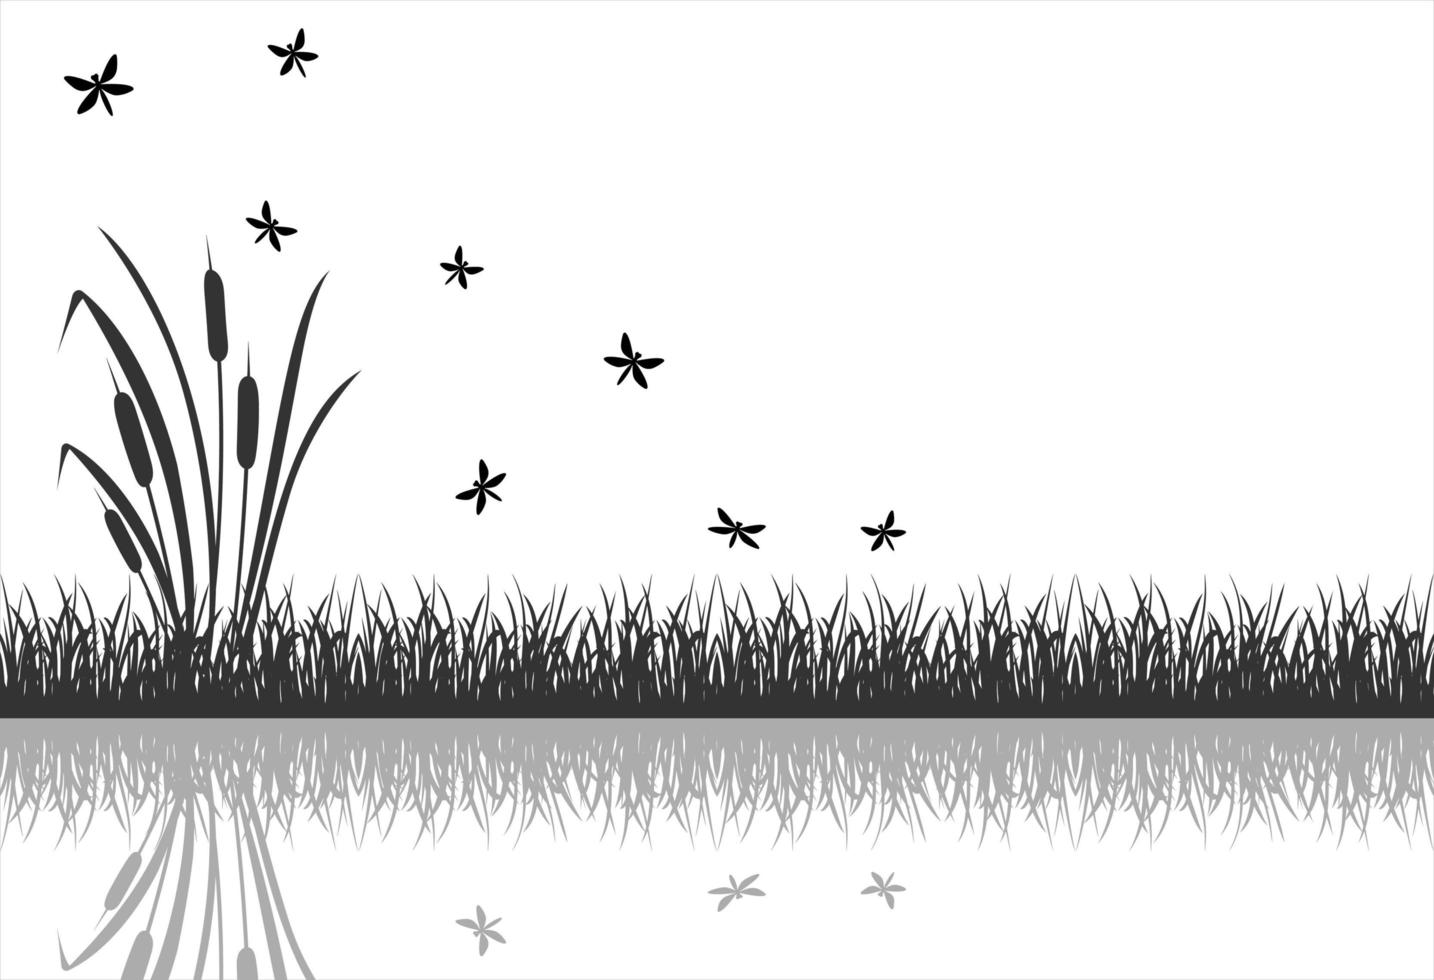 la silhouette noire de l'herbe des marais avec des insectes volants, des libellules se reflète dans l'eau. vecteur